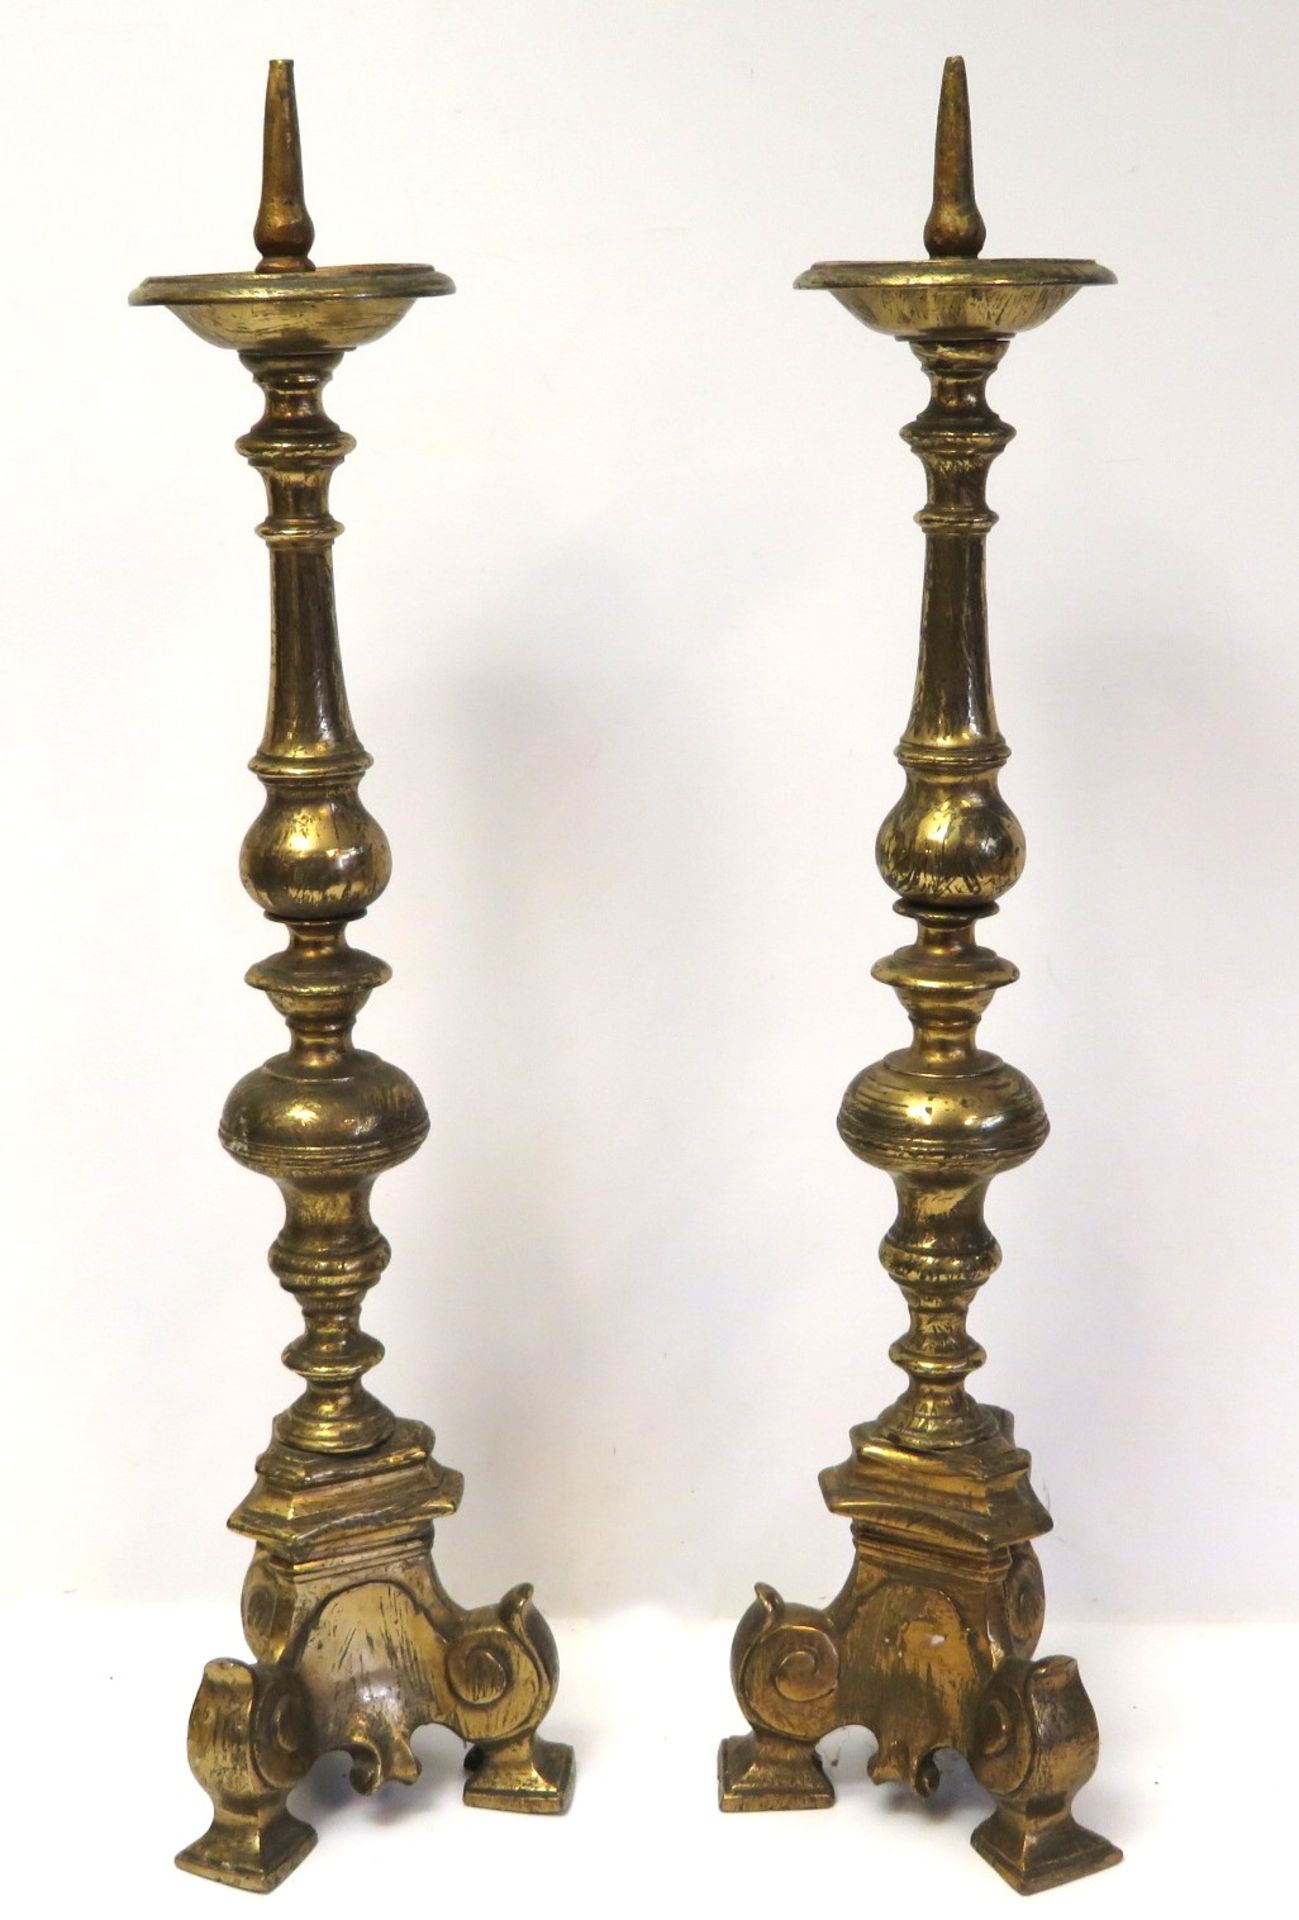 2 Kirchenkerzenleuchter, 19. Jahrhundert, Bronze mit Resten von Feuervergoldung, h 59 cm, d 14 cm.